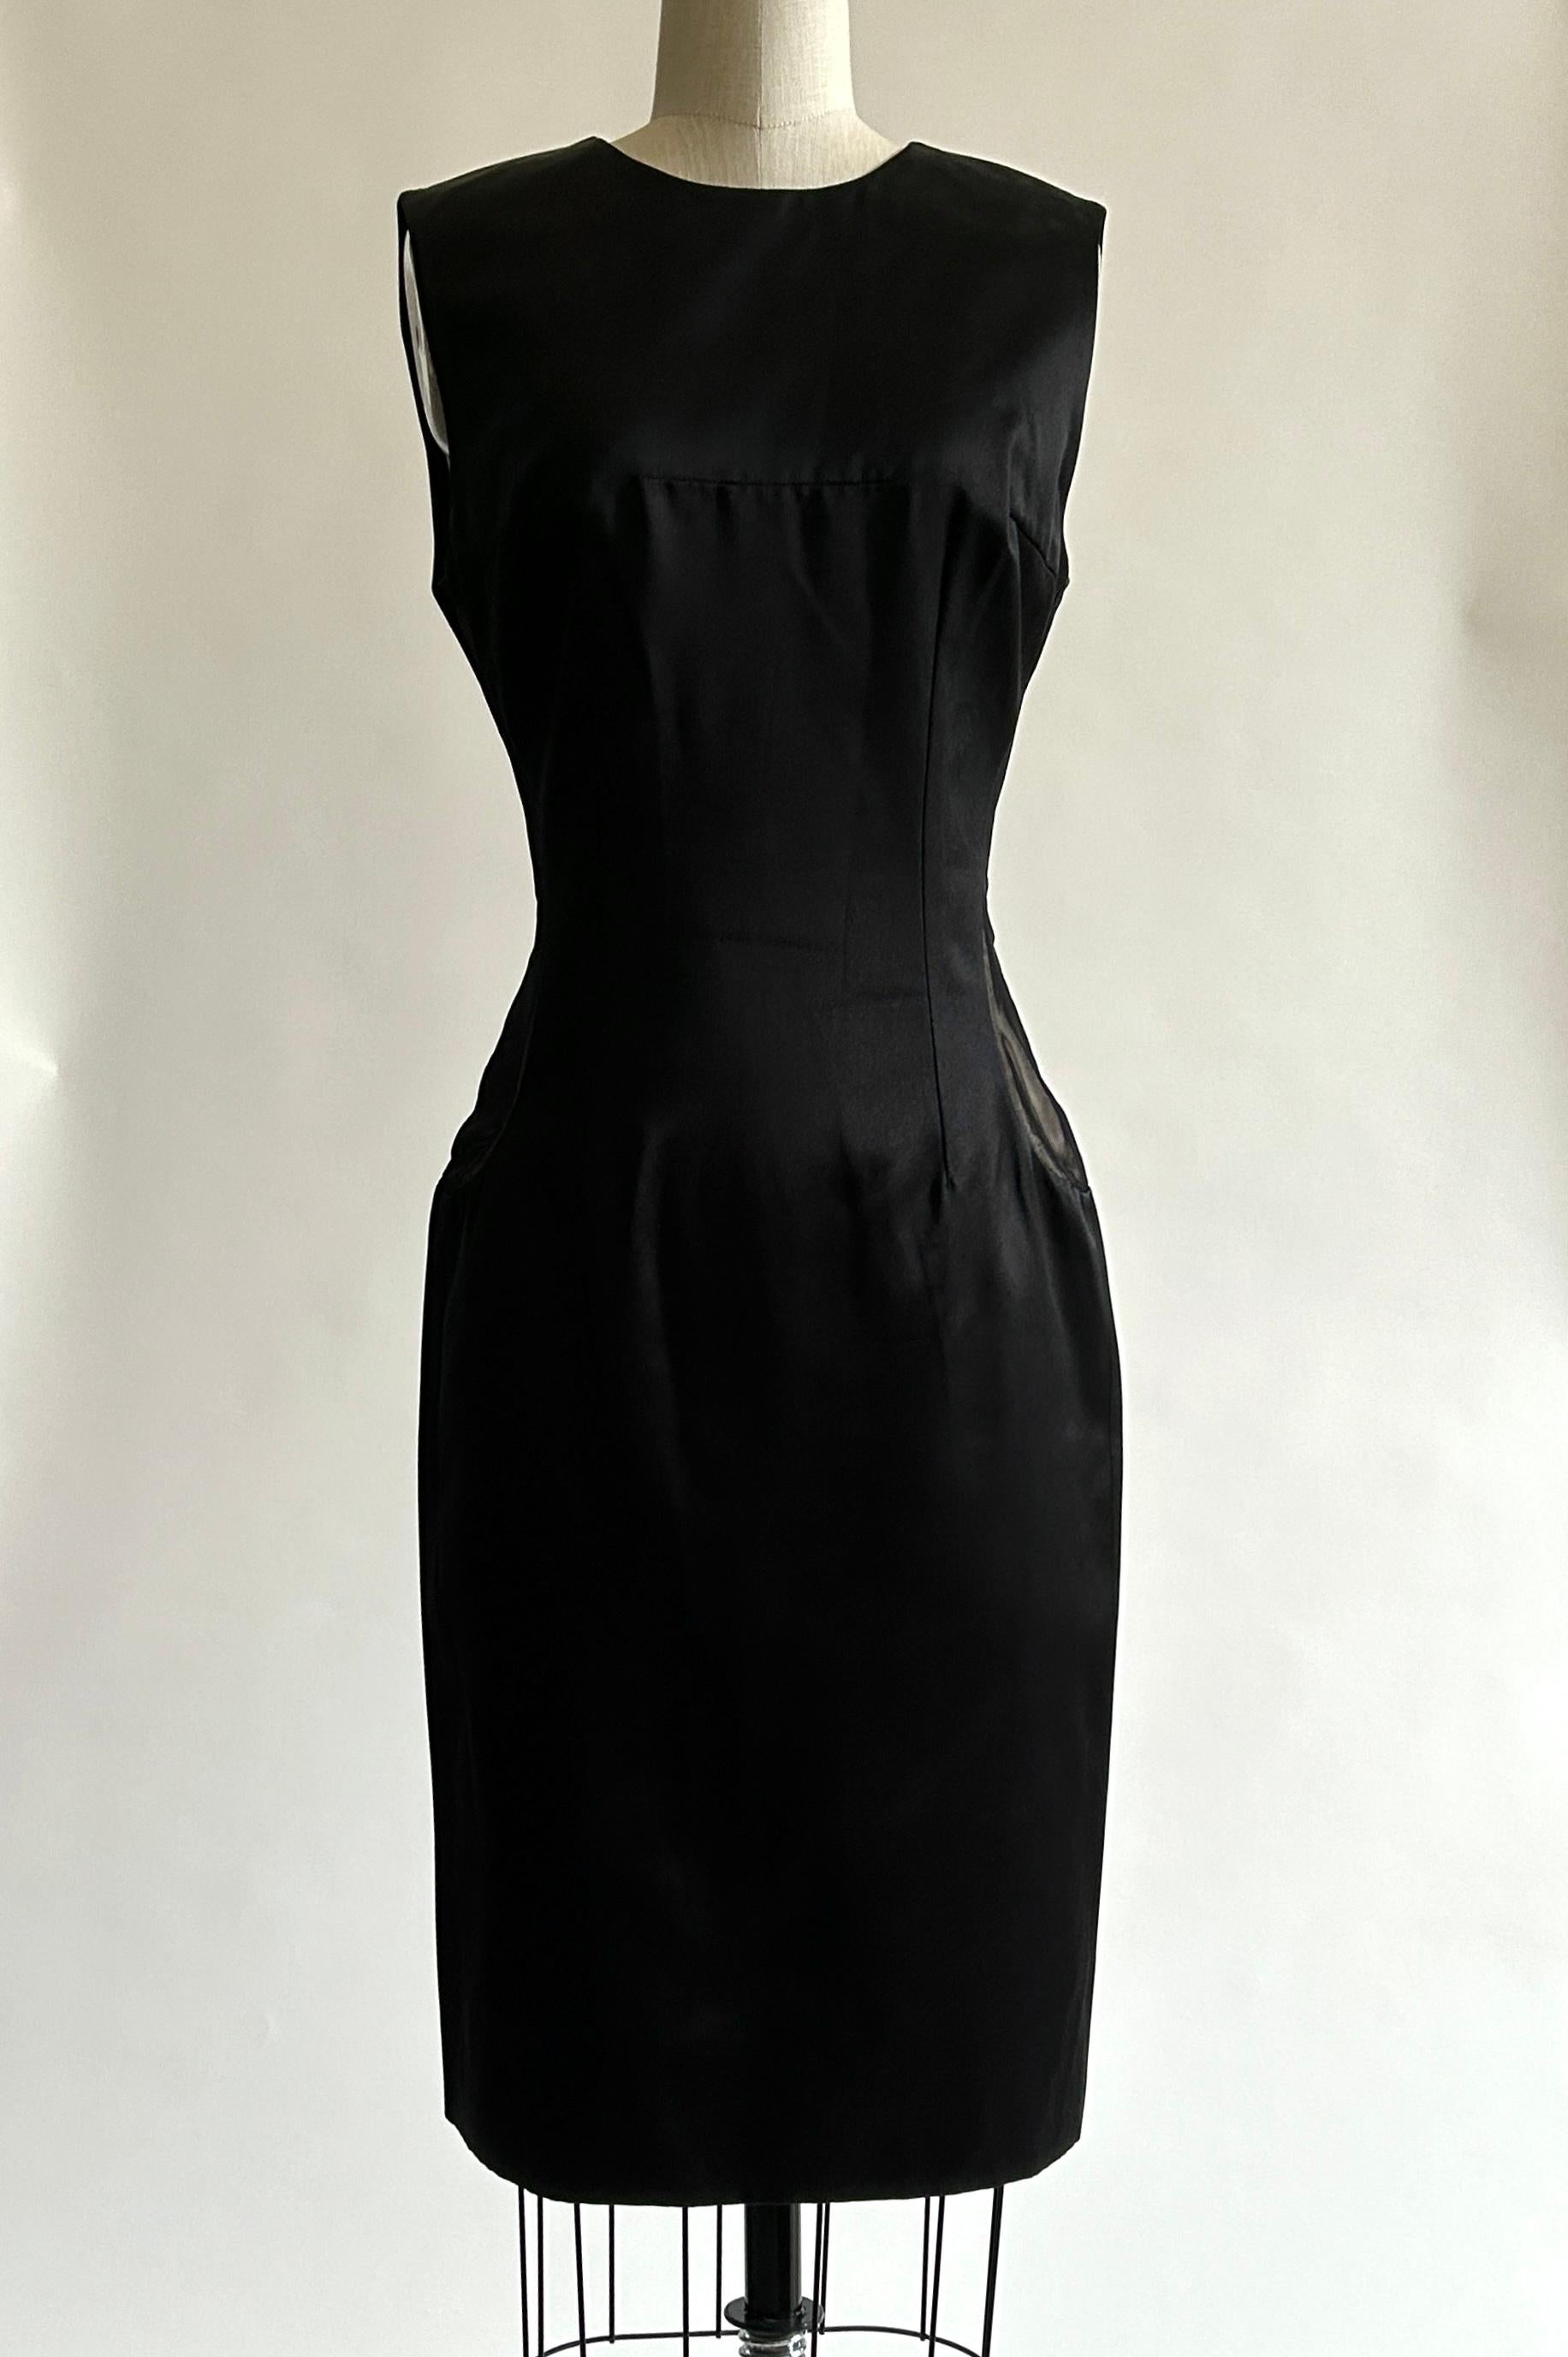 Robe ajustée en soie noire d'Alexander McQueen, avec empiècements en forme de goutte d'eau en maille transparente sur les côtés et doublure nude en dessous. Les panneaux inattendus ajoutent juste ce qu'il faut d'audace à une robe noire classique !